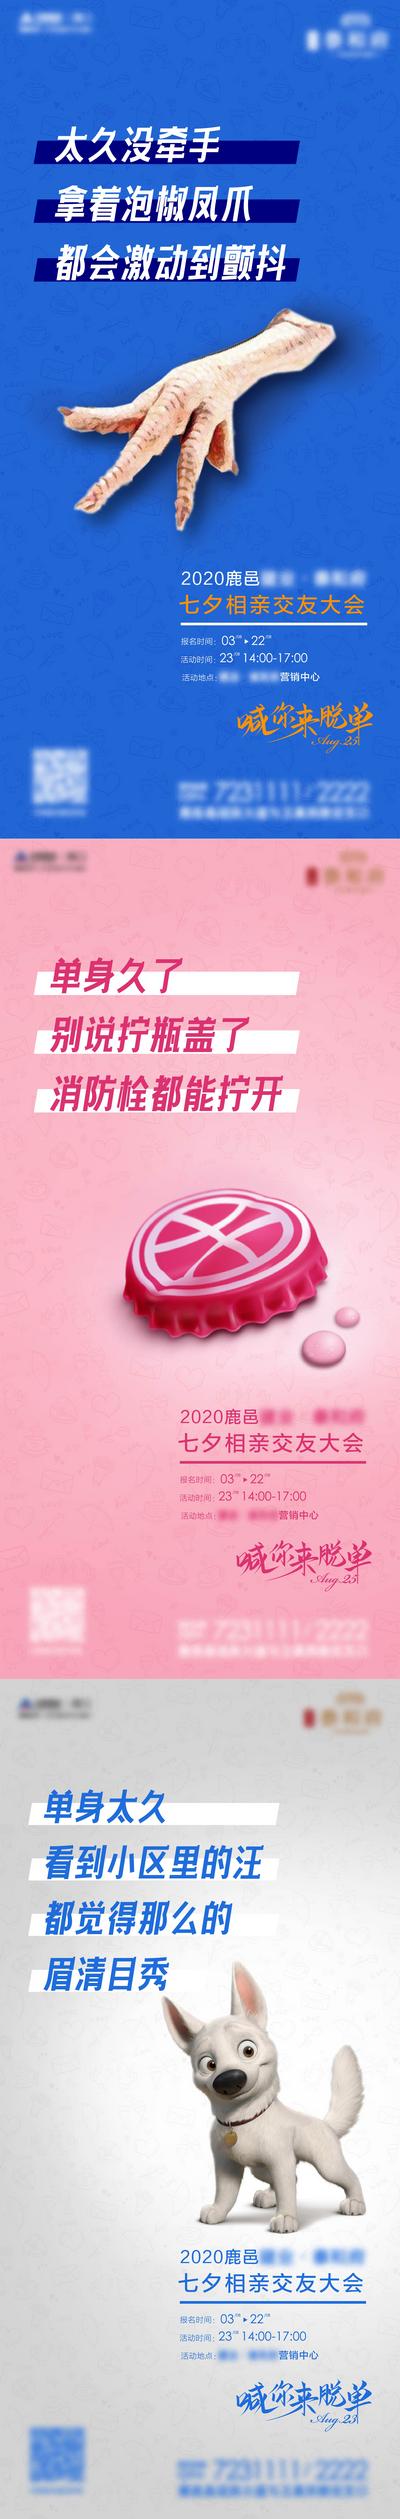 【南门网】海报 房地产 中国传统节日 七夕 单身狗 瓶盖